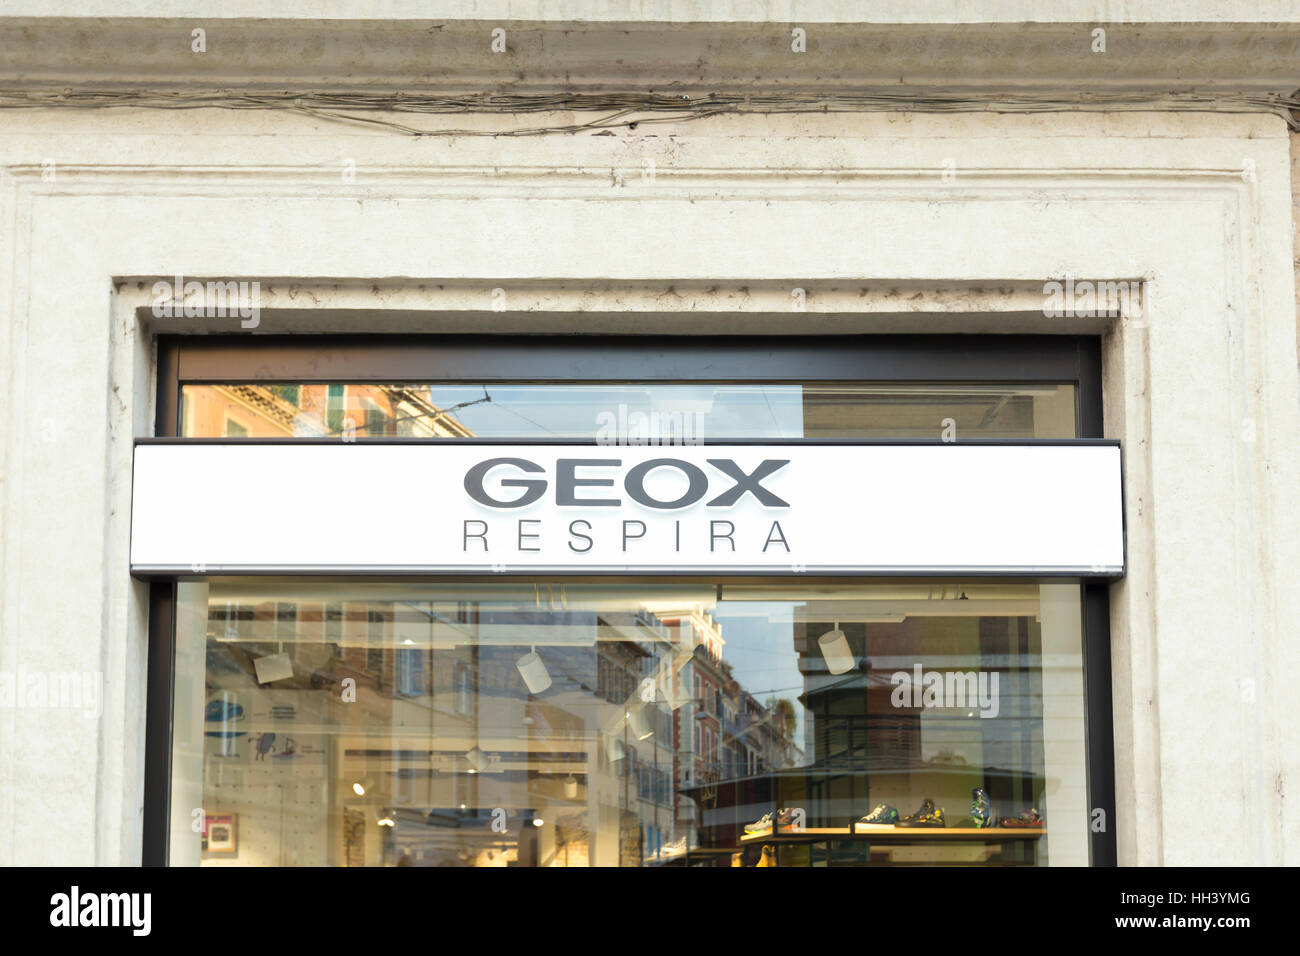 Tienda geox fotografías e imágenes alta resolución - Alamy